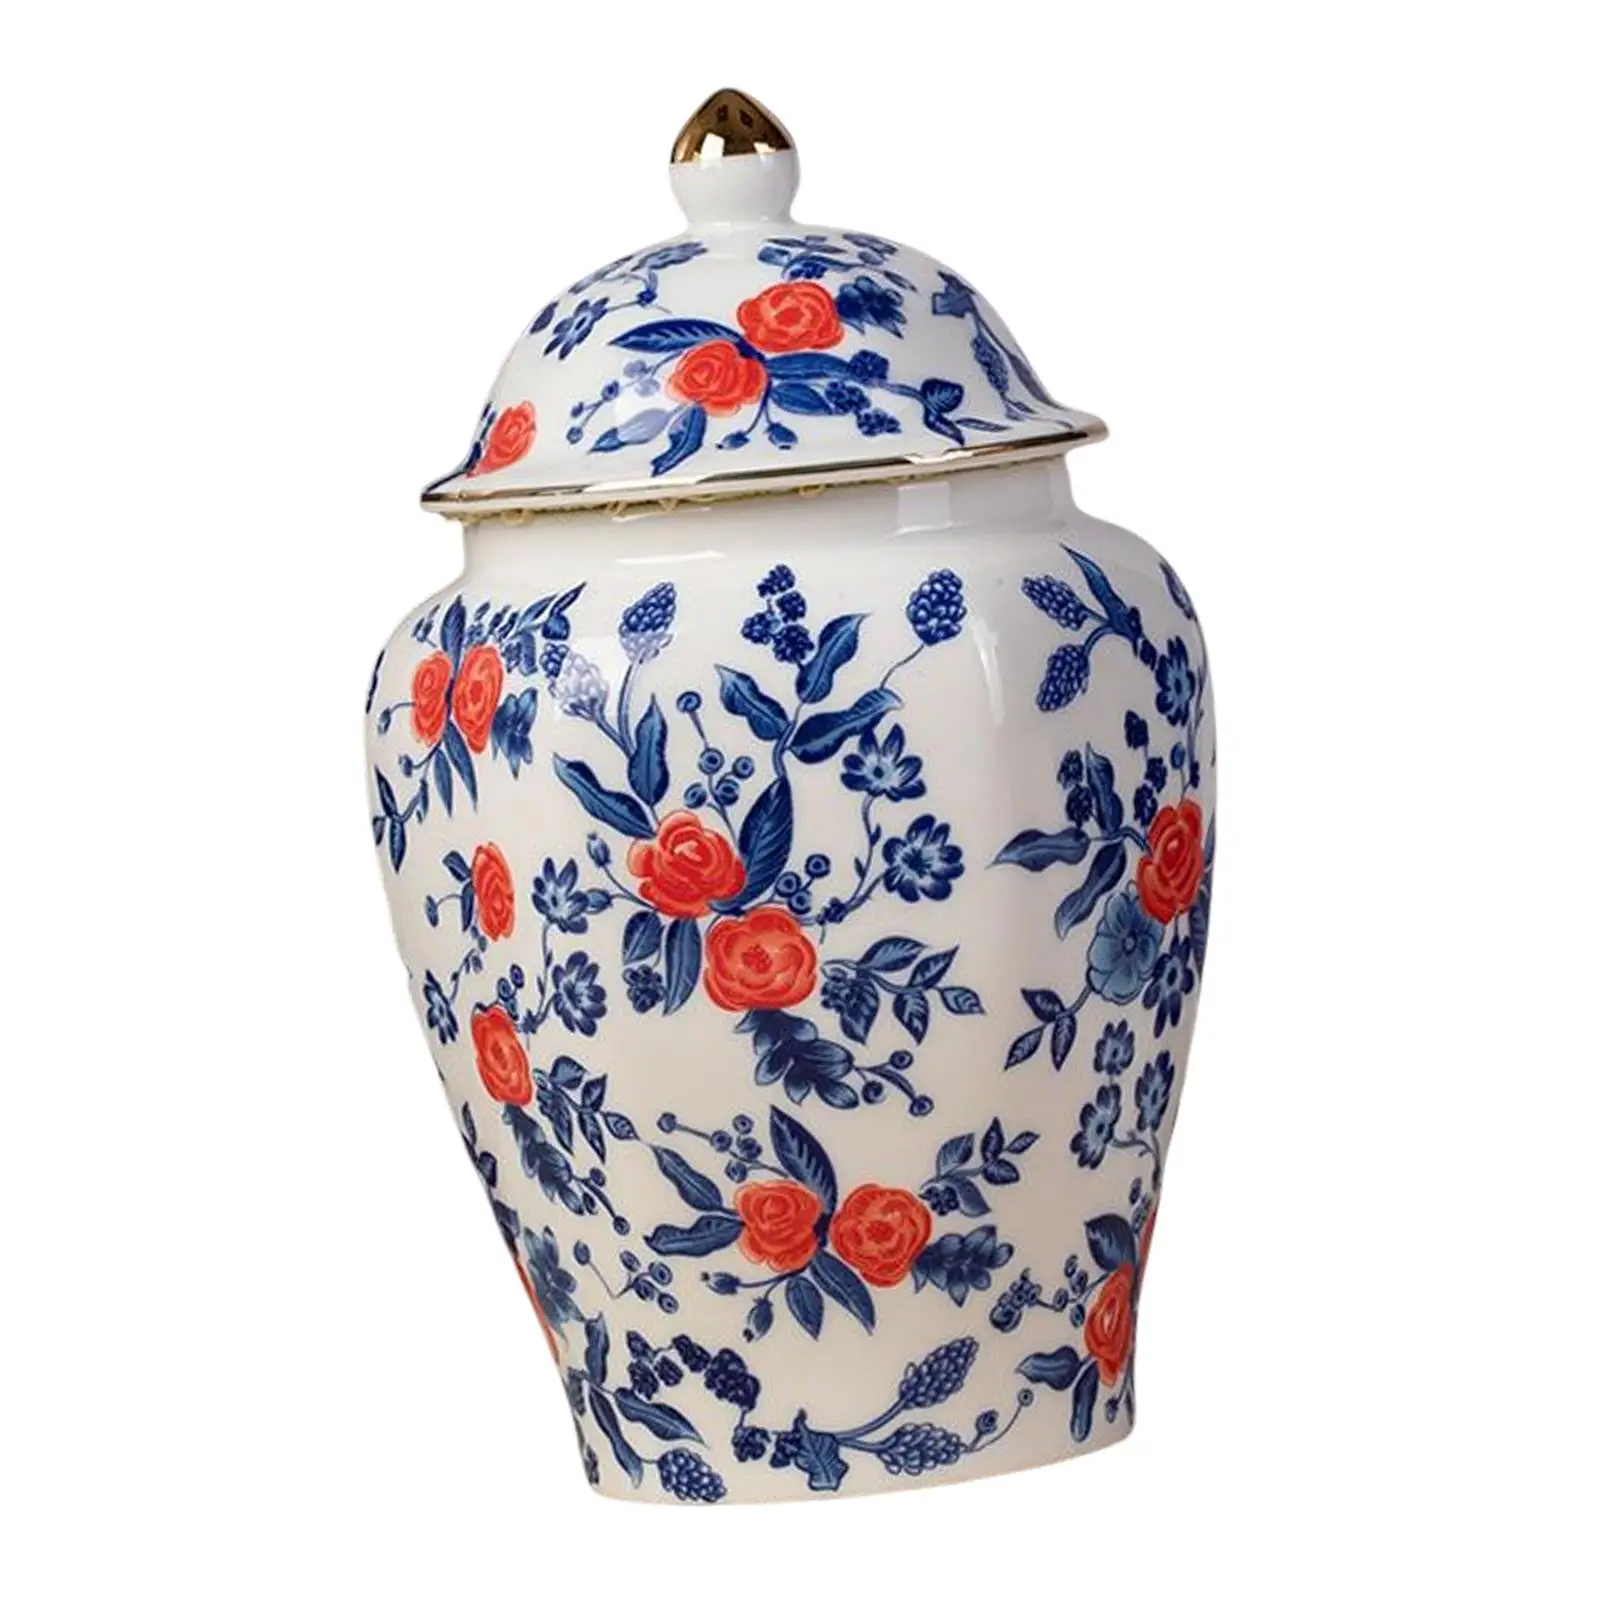 Antique Ceramic Ginger Jar Flower Vase for Kitchen Home Centerpiece Table Decoration